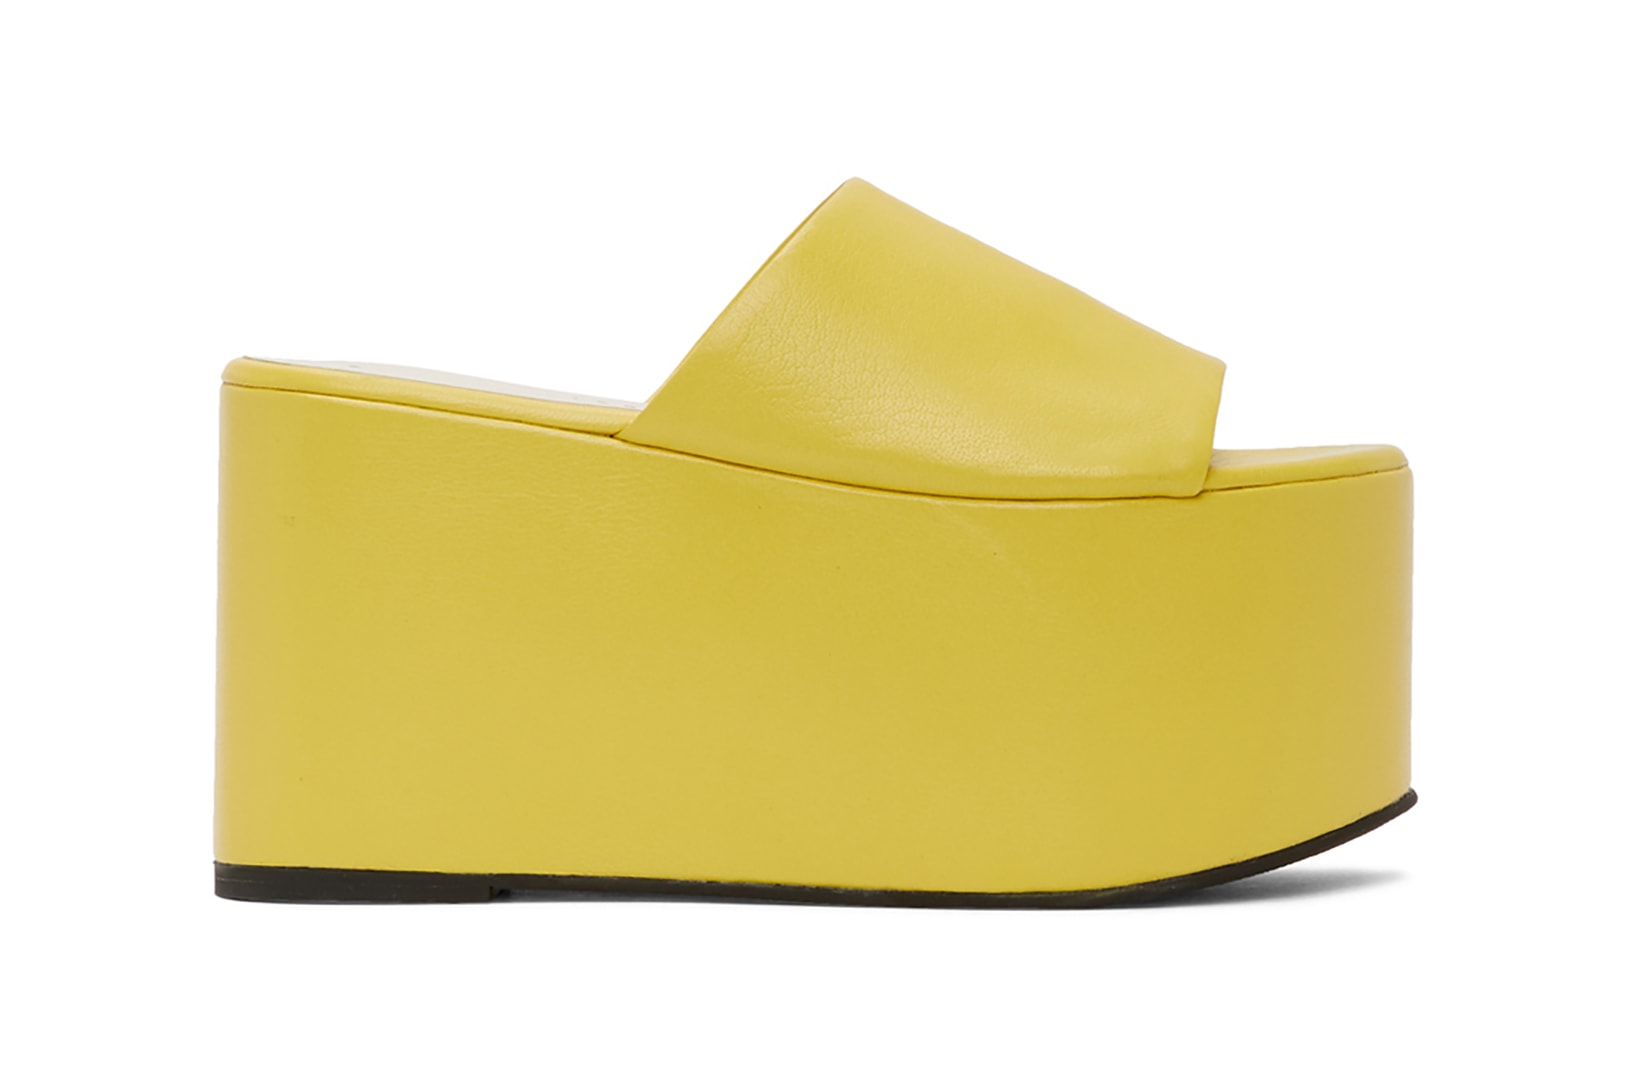 simon miller yellow blackout platform sandals shoes